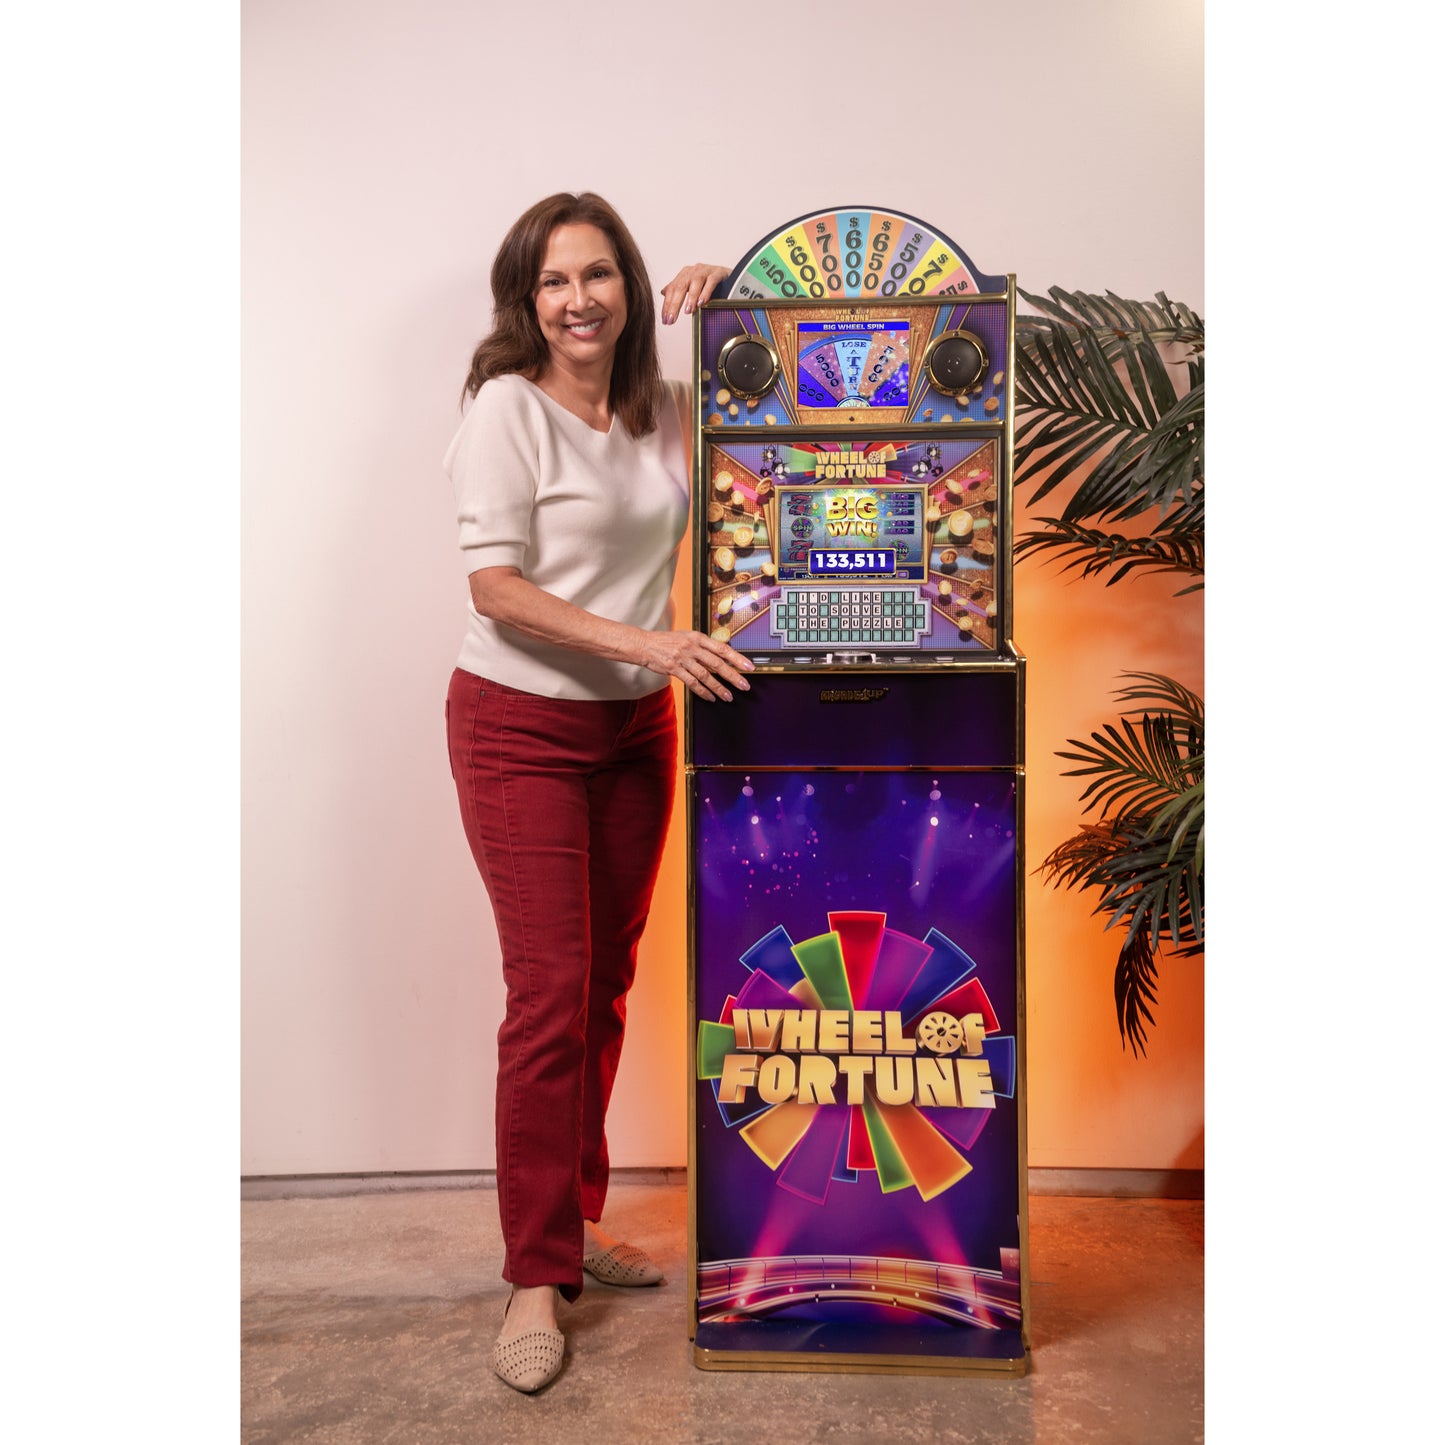 Wheel of Fortune Casinocade Deluxe Arcade Game